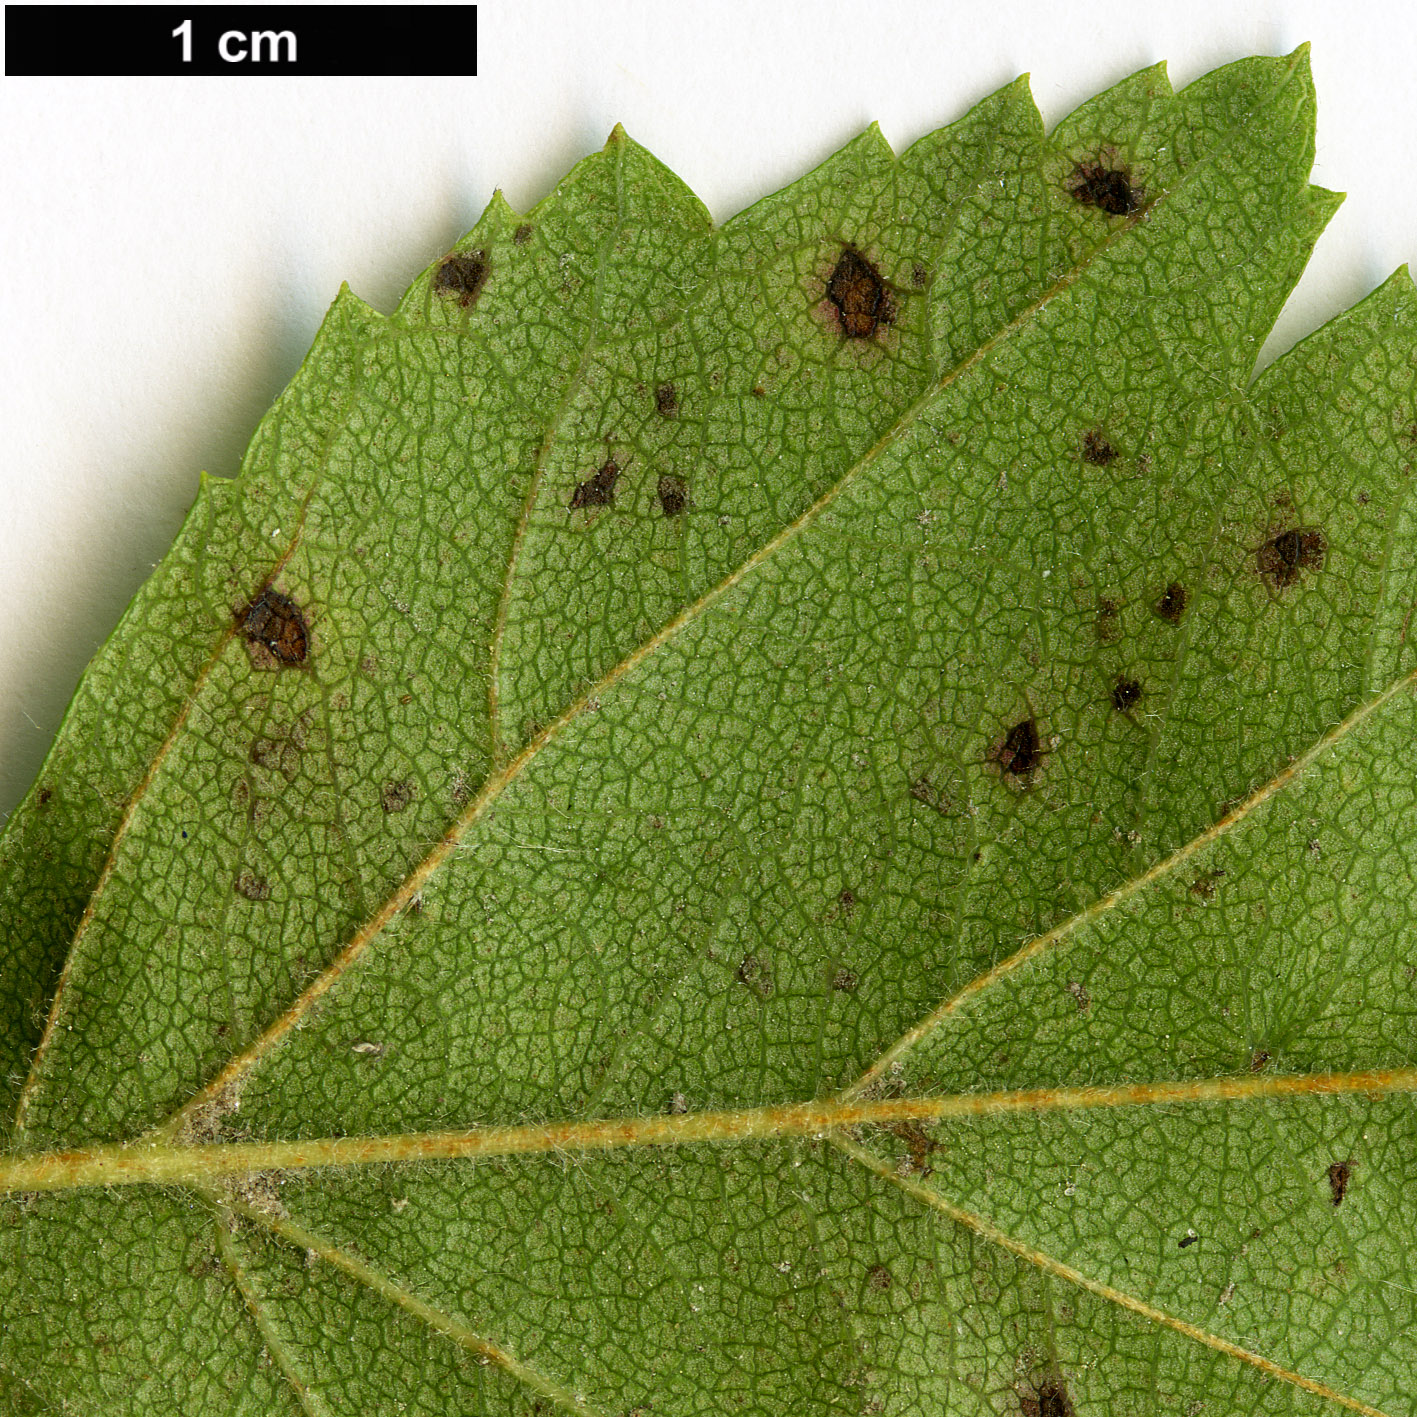 High resolution image: Family: Rosaceae - Genus: Crataegus - Taxon: mollis - SpeciesSub: var. viburnifolia